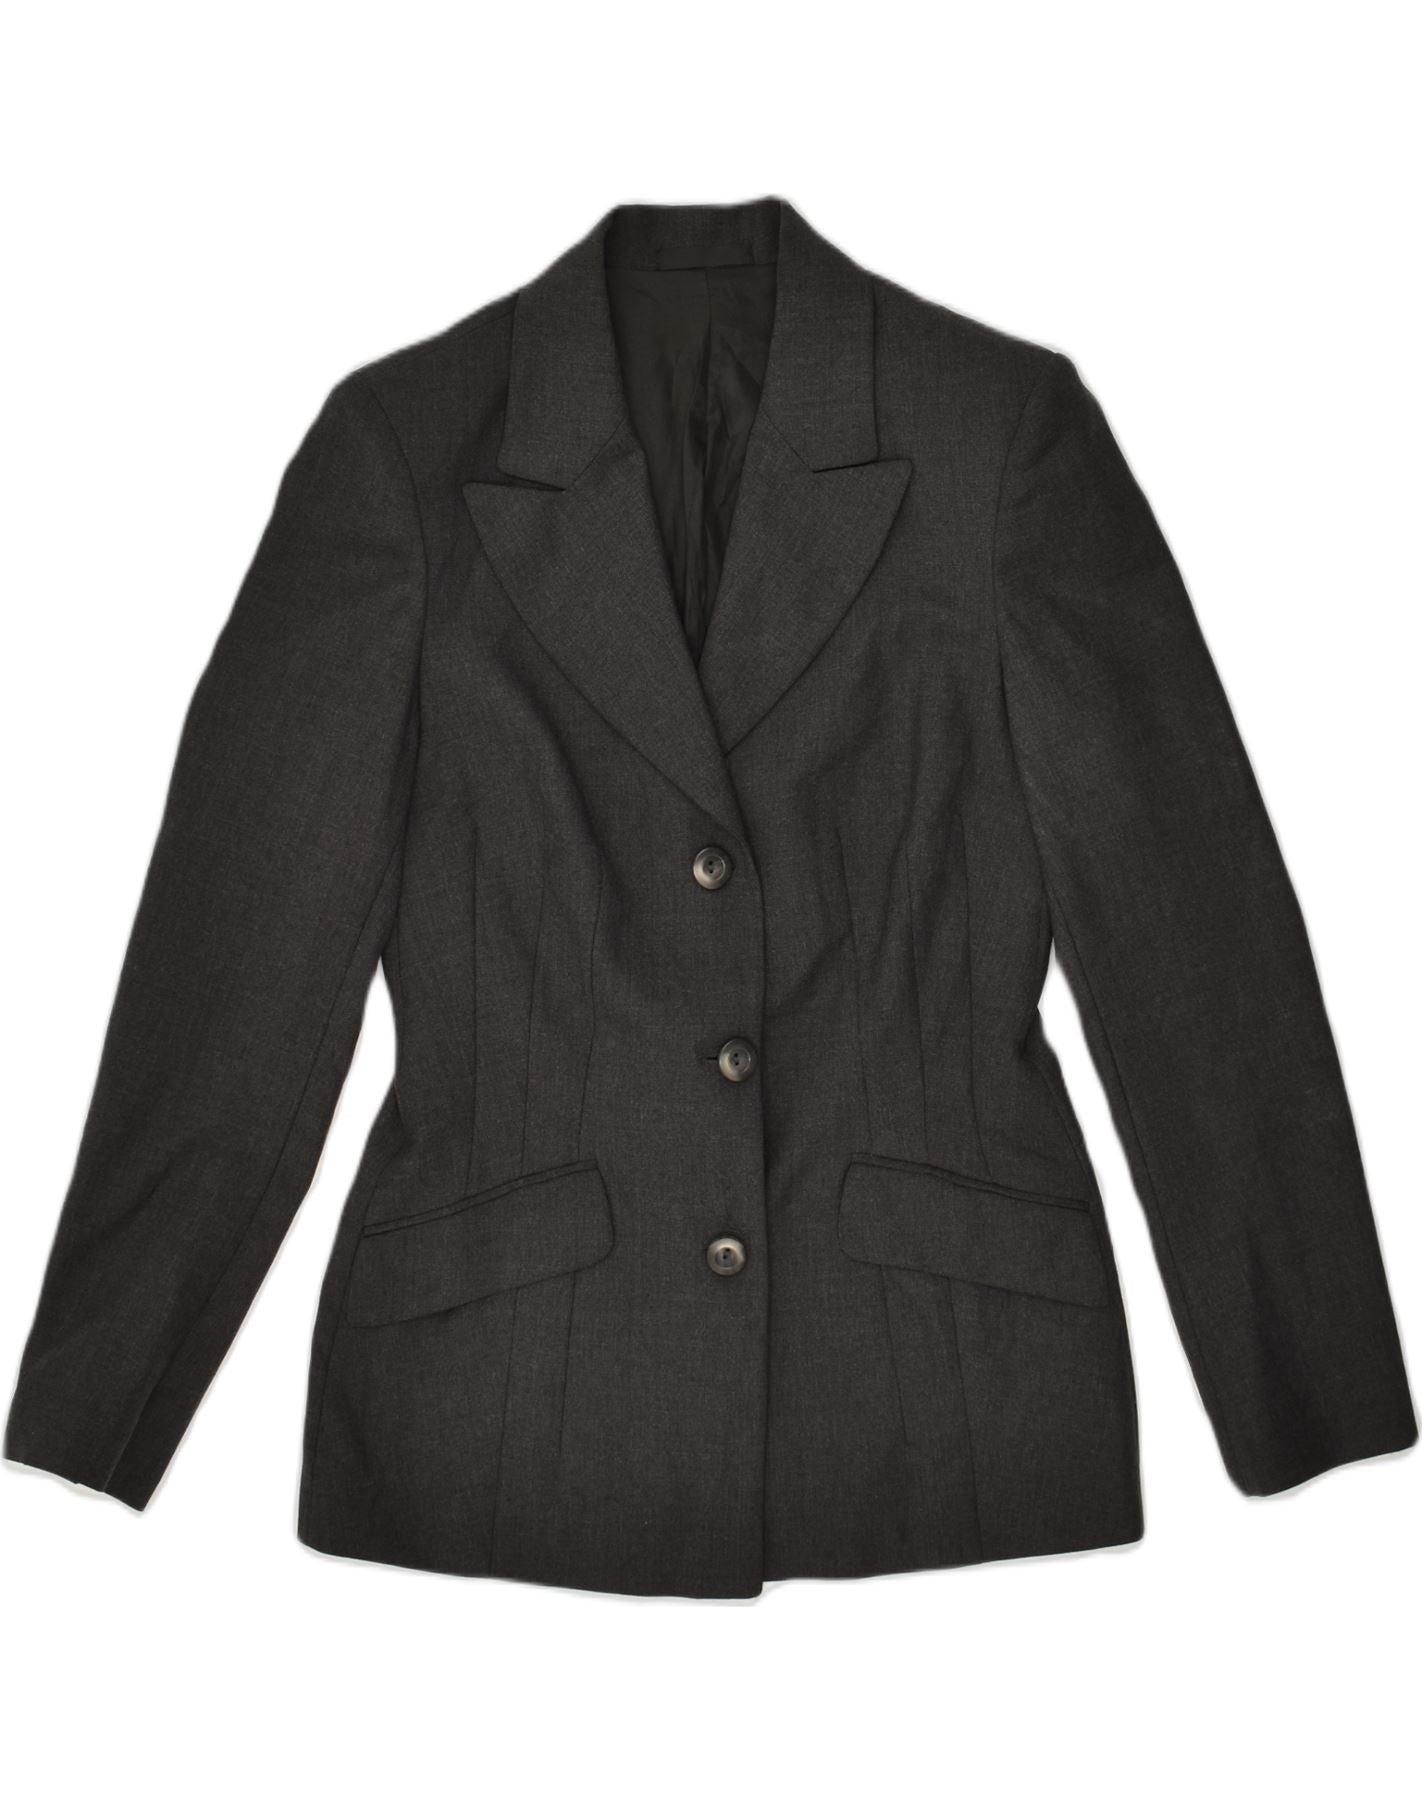 VINTAGE Womens 3 Button Blazer Jacket UK 14 Large Grey Virgin Wool